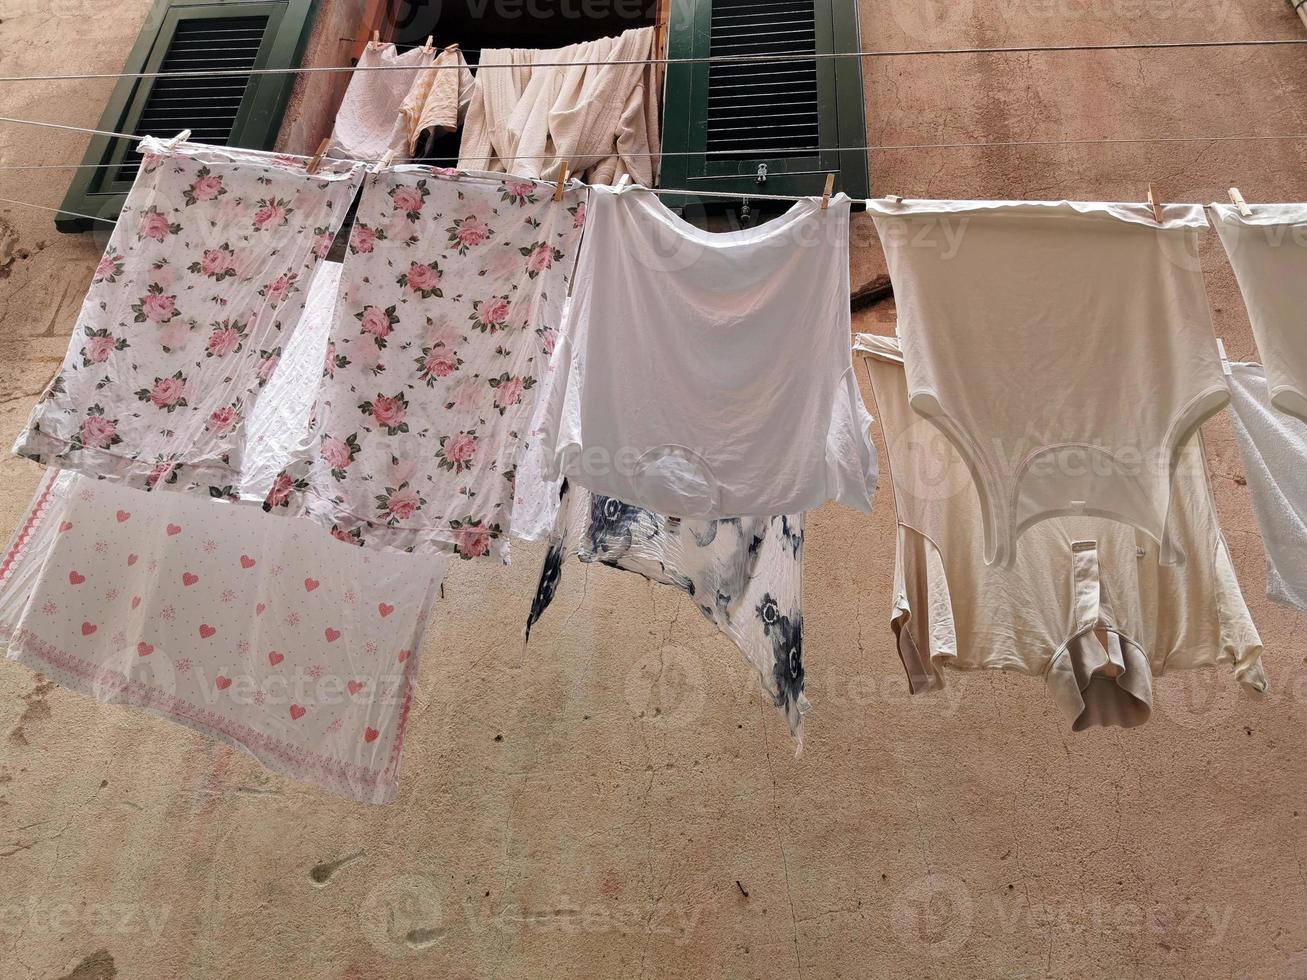 vêtements suspendus pour sécher dans un village pittoresque italien photo